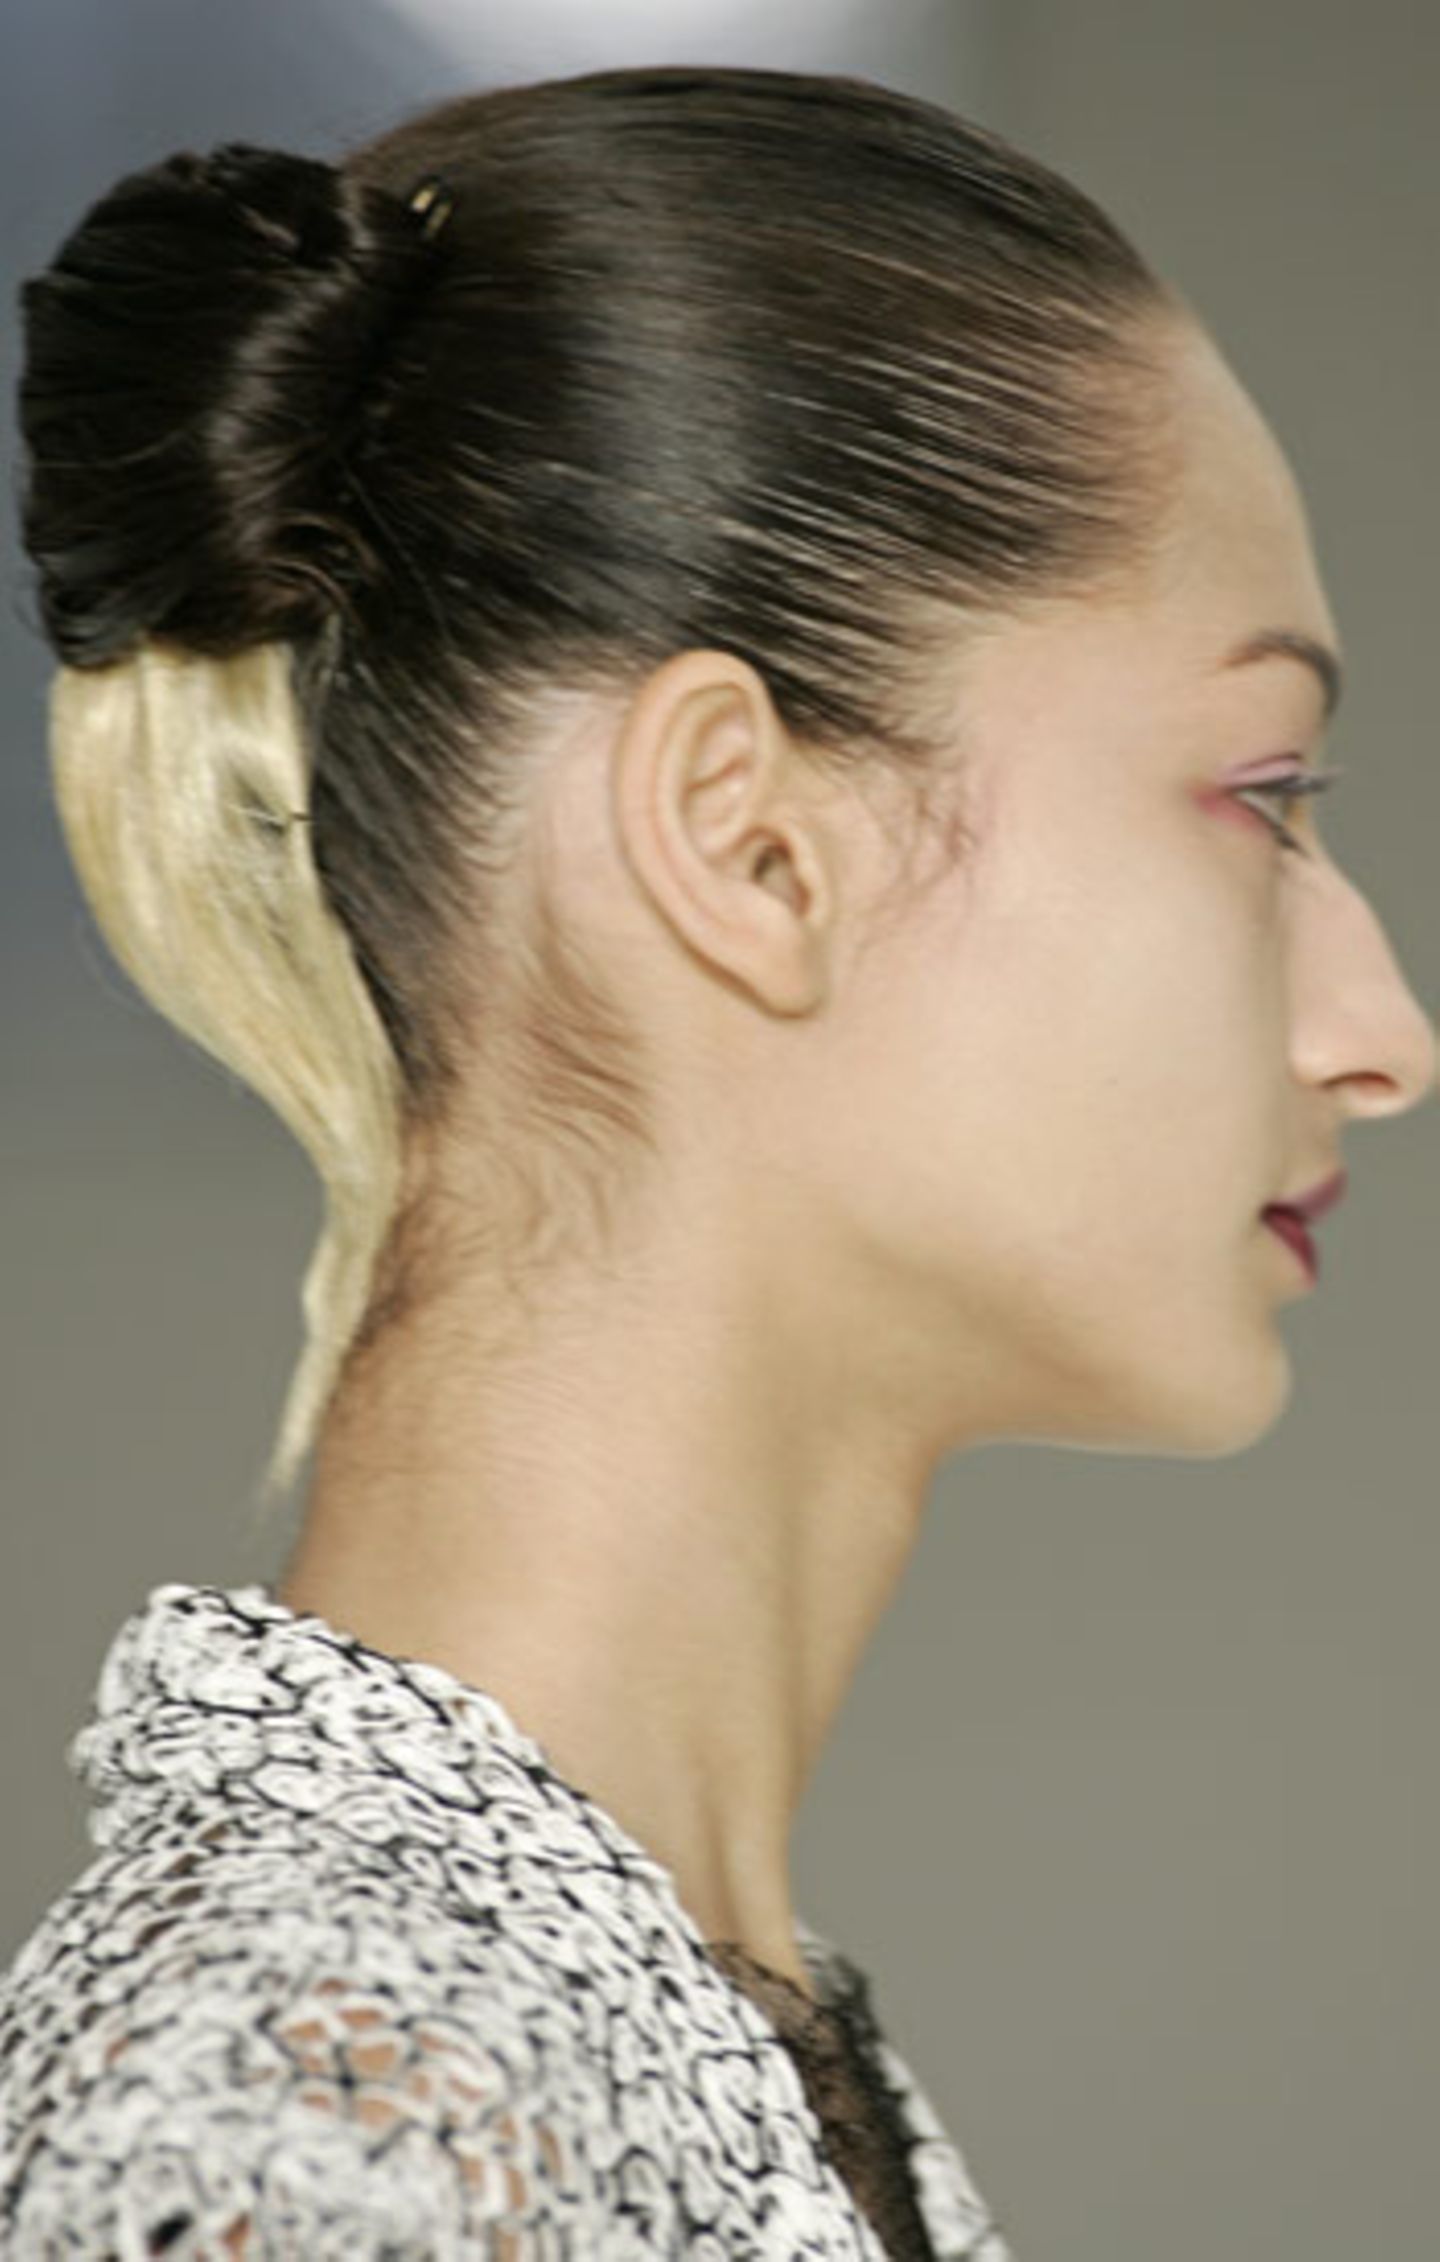 Der Hairstyle wurde von den Aveda-Stylisten gekonnt umgesetzt